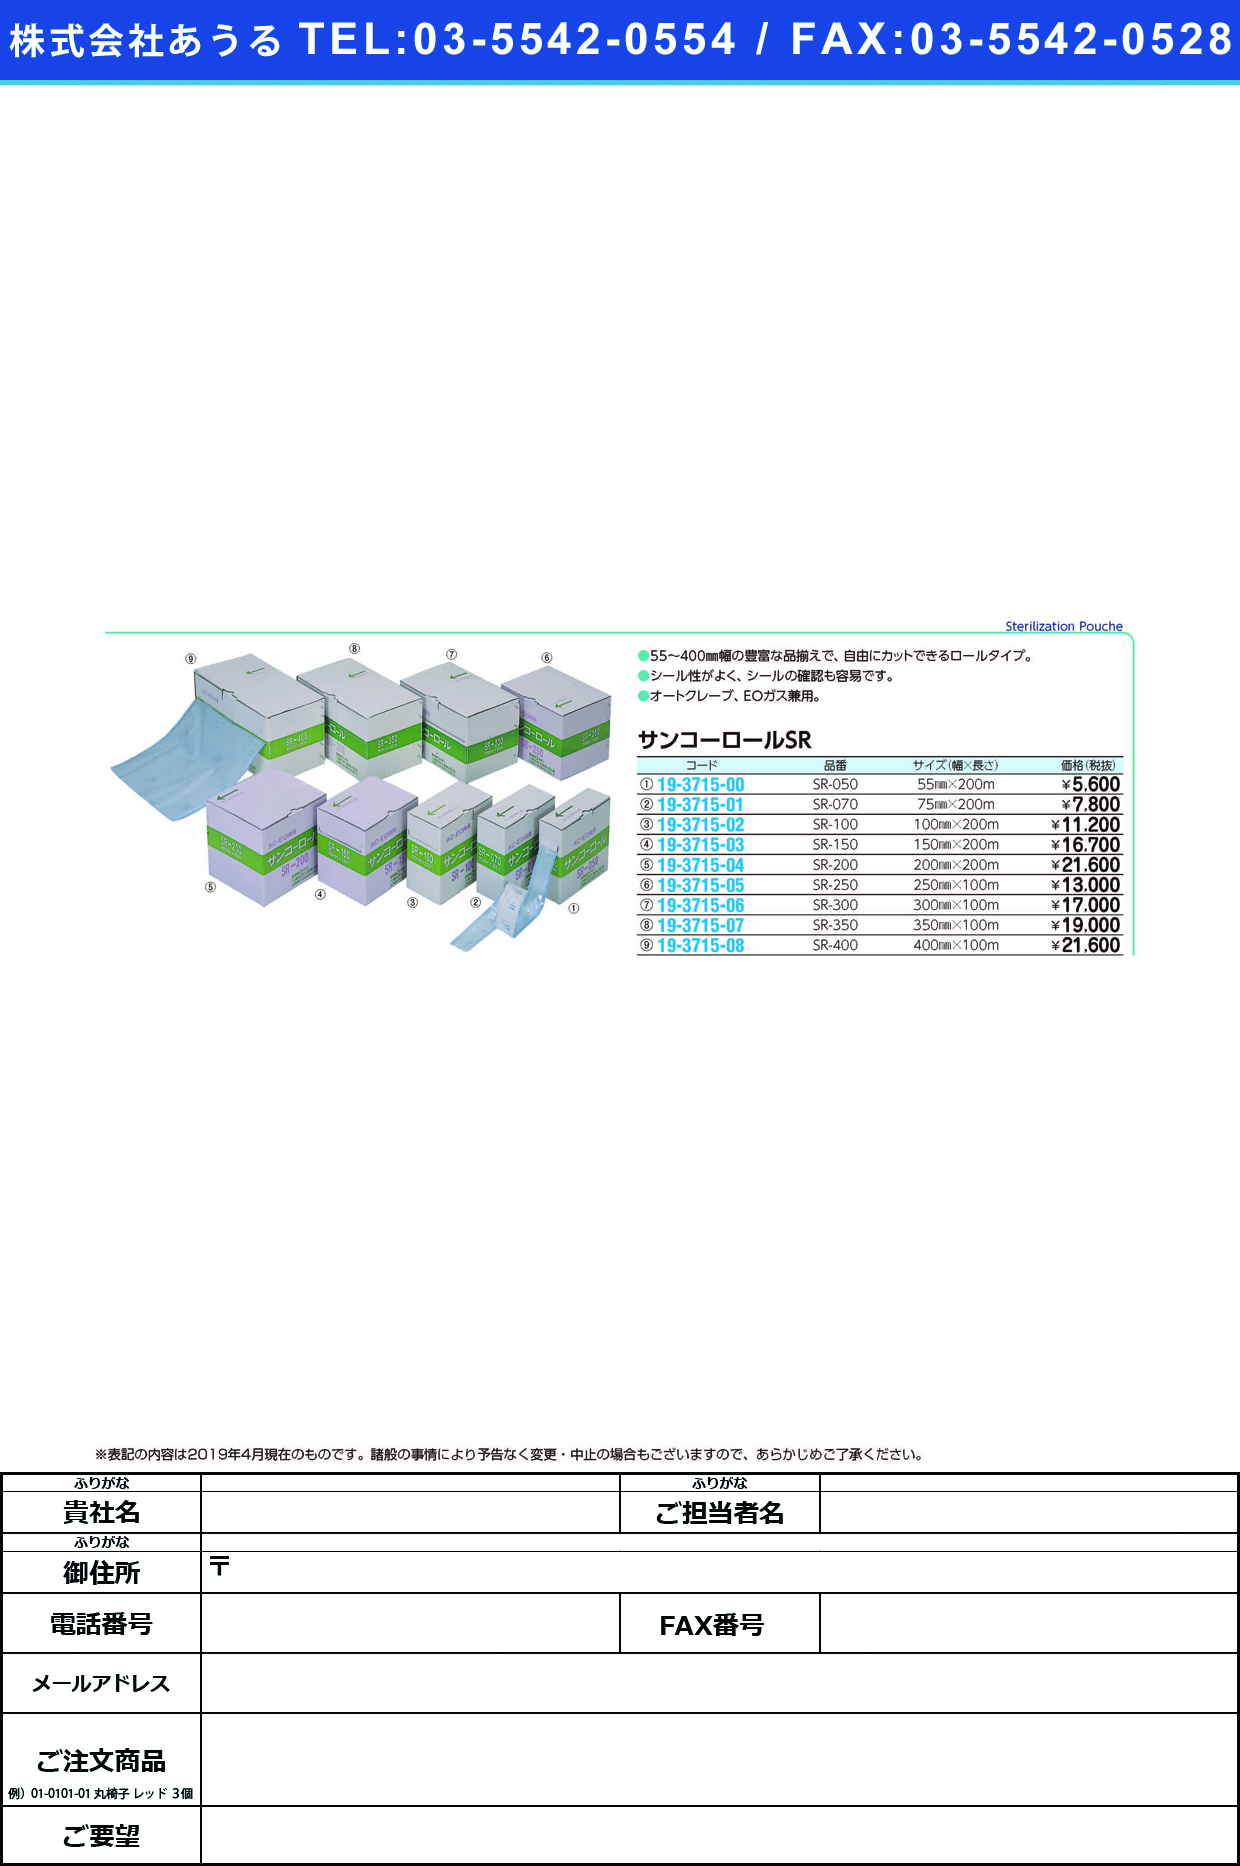 (19-3715-02)サンコーロール SR-100(100MMX200M) ｻﾝｺｰﾛｰﾙ(三興化学工業)【1巻単位】【2019年カタログ商品】